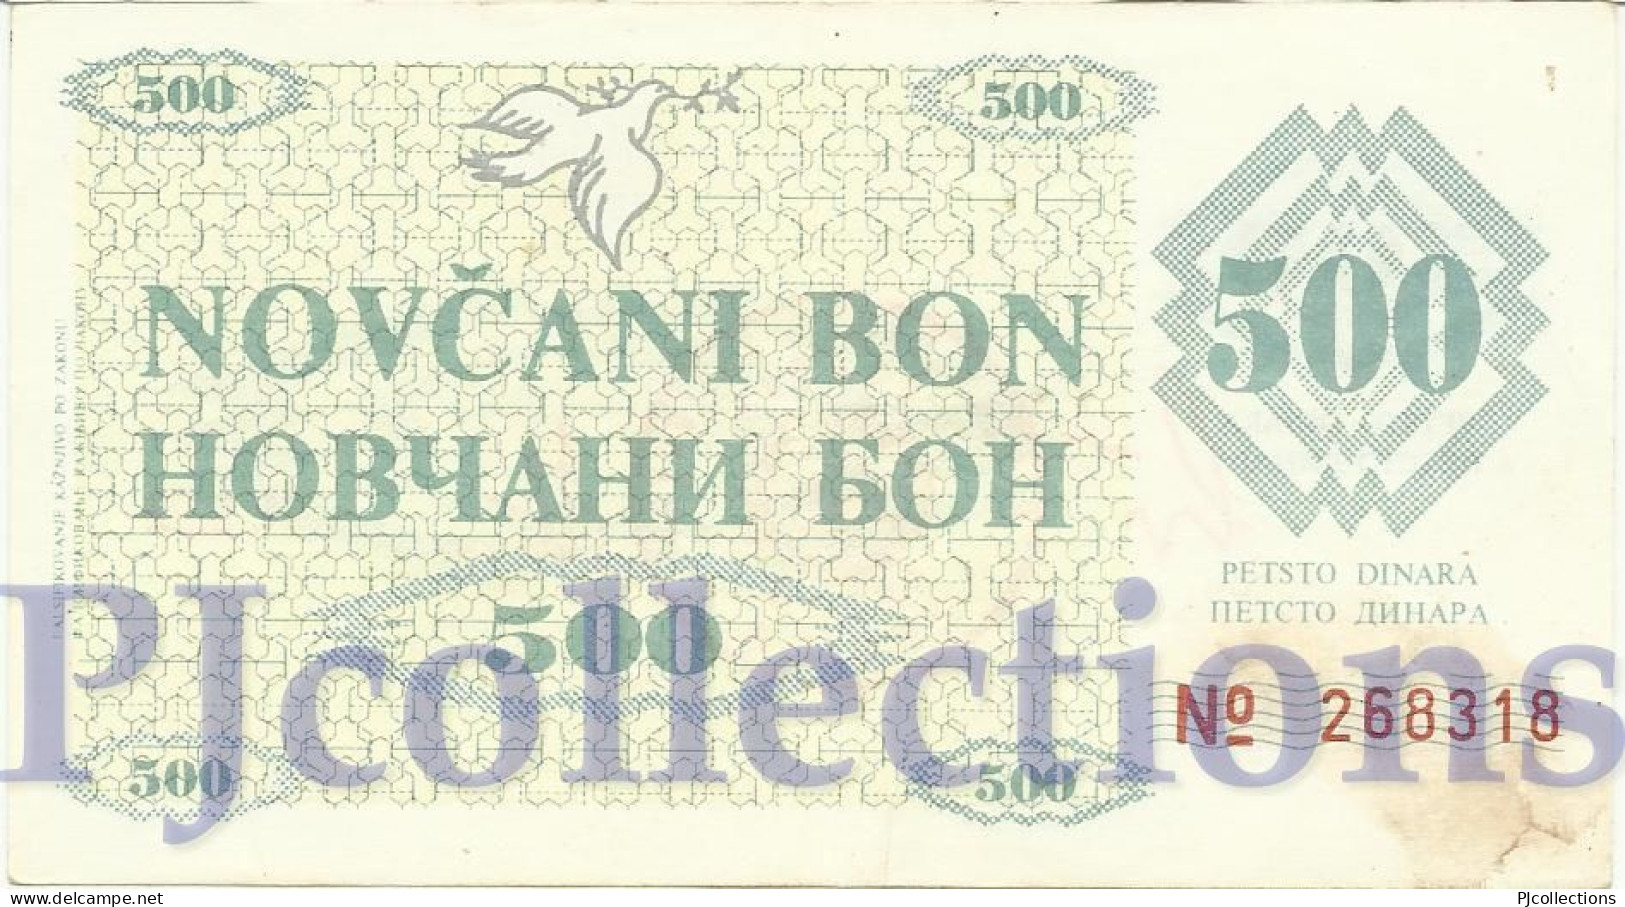 BOSNIA HERZEGOVINA 500 DINARA 1992 PICK 7g XF "ZENICA" - Bosnie-Herzegovine